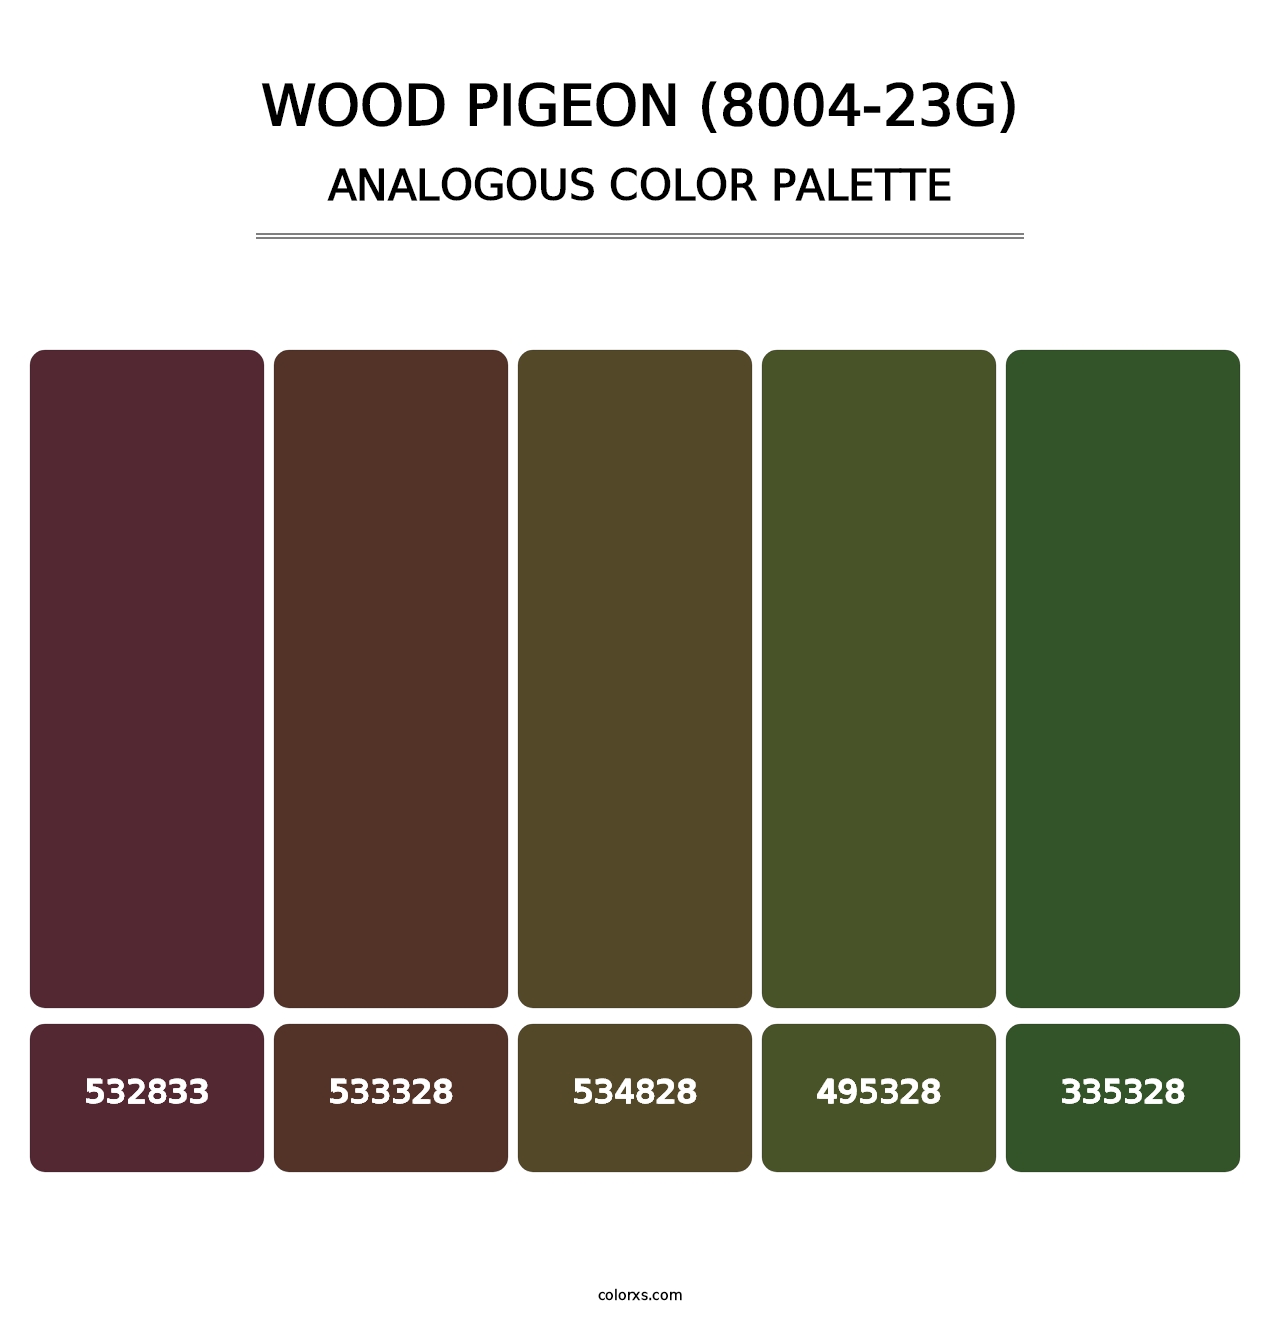 Wood Pigeon (8004-23G) - Analogous Color Palette